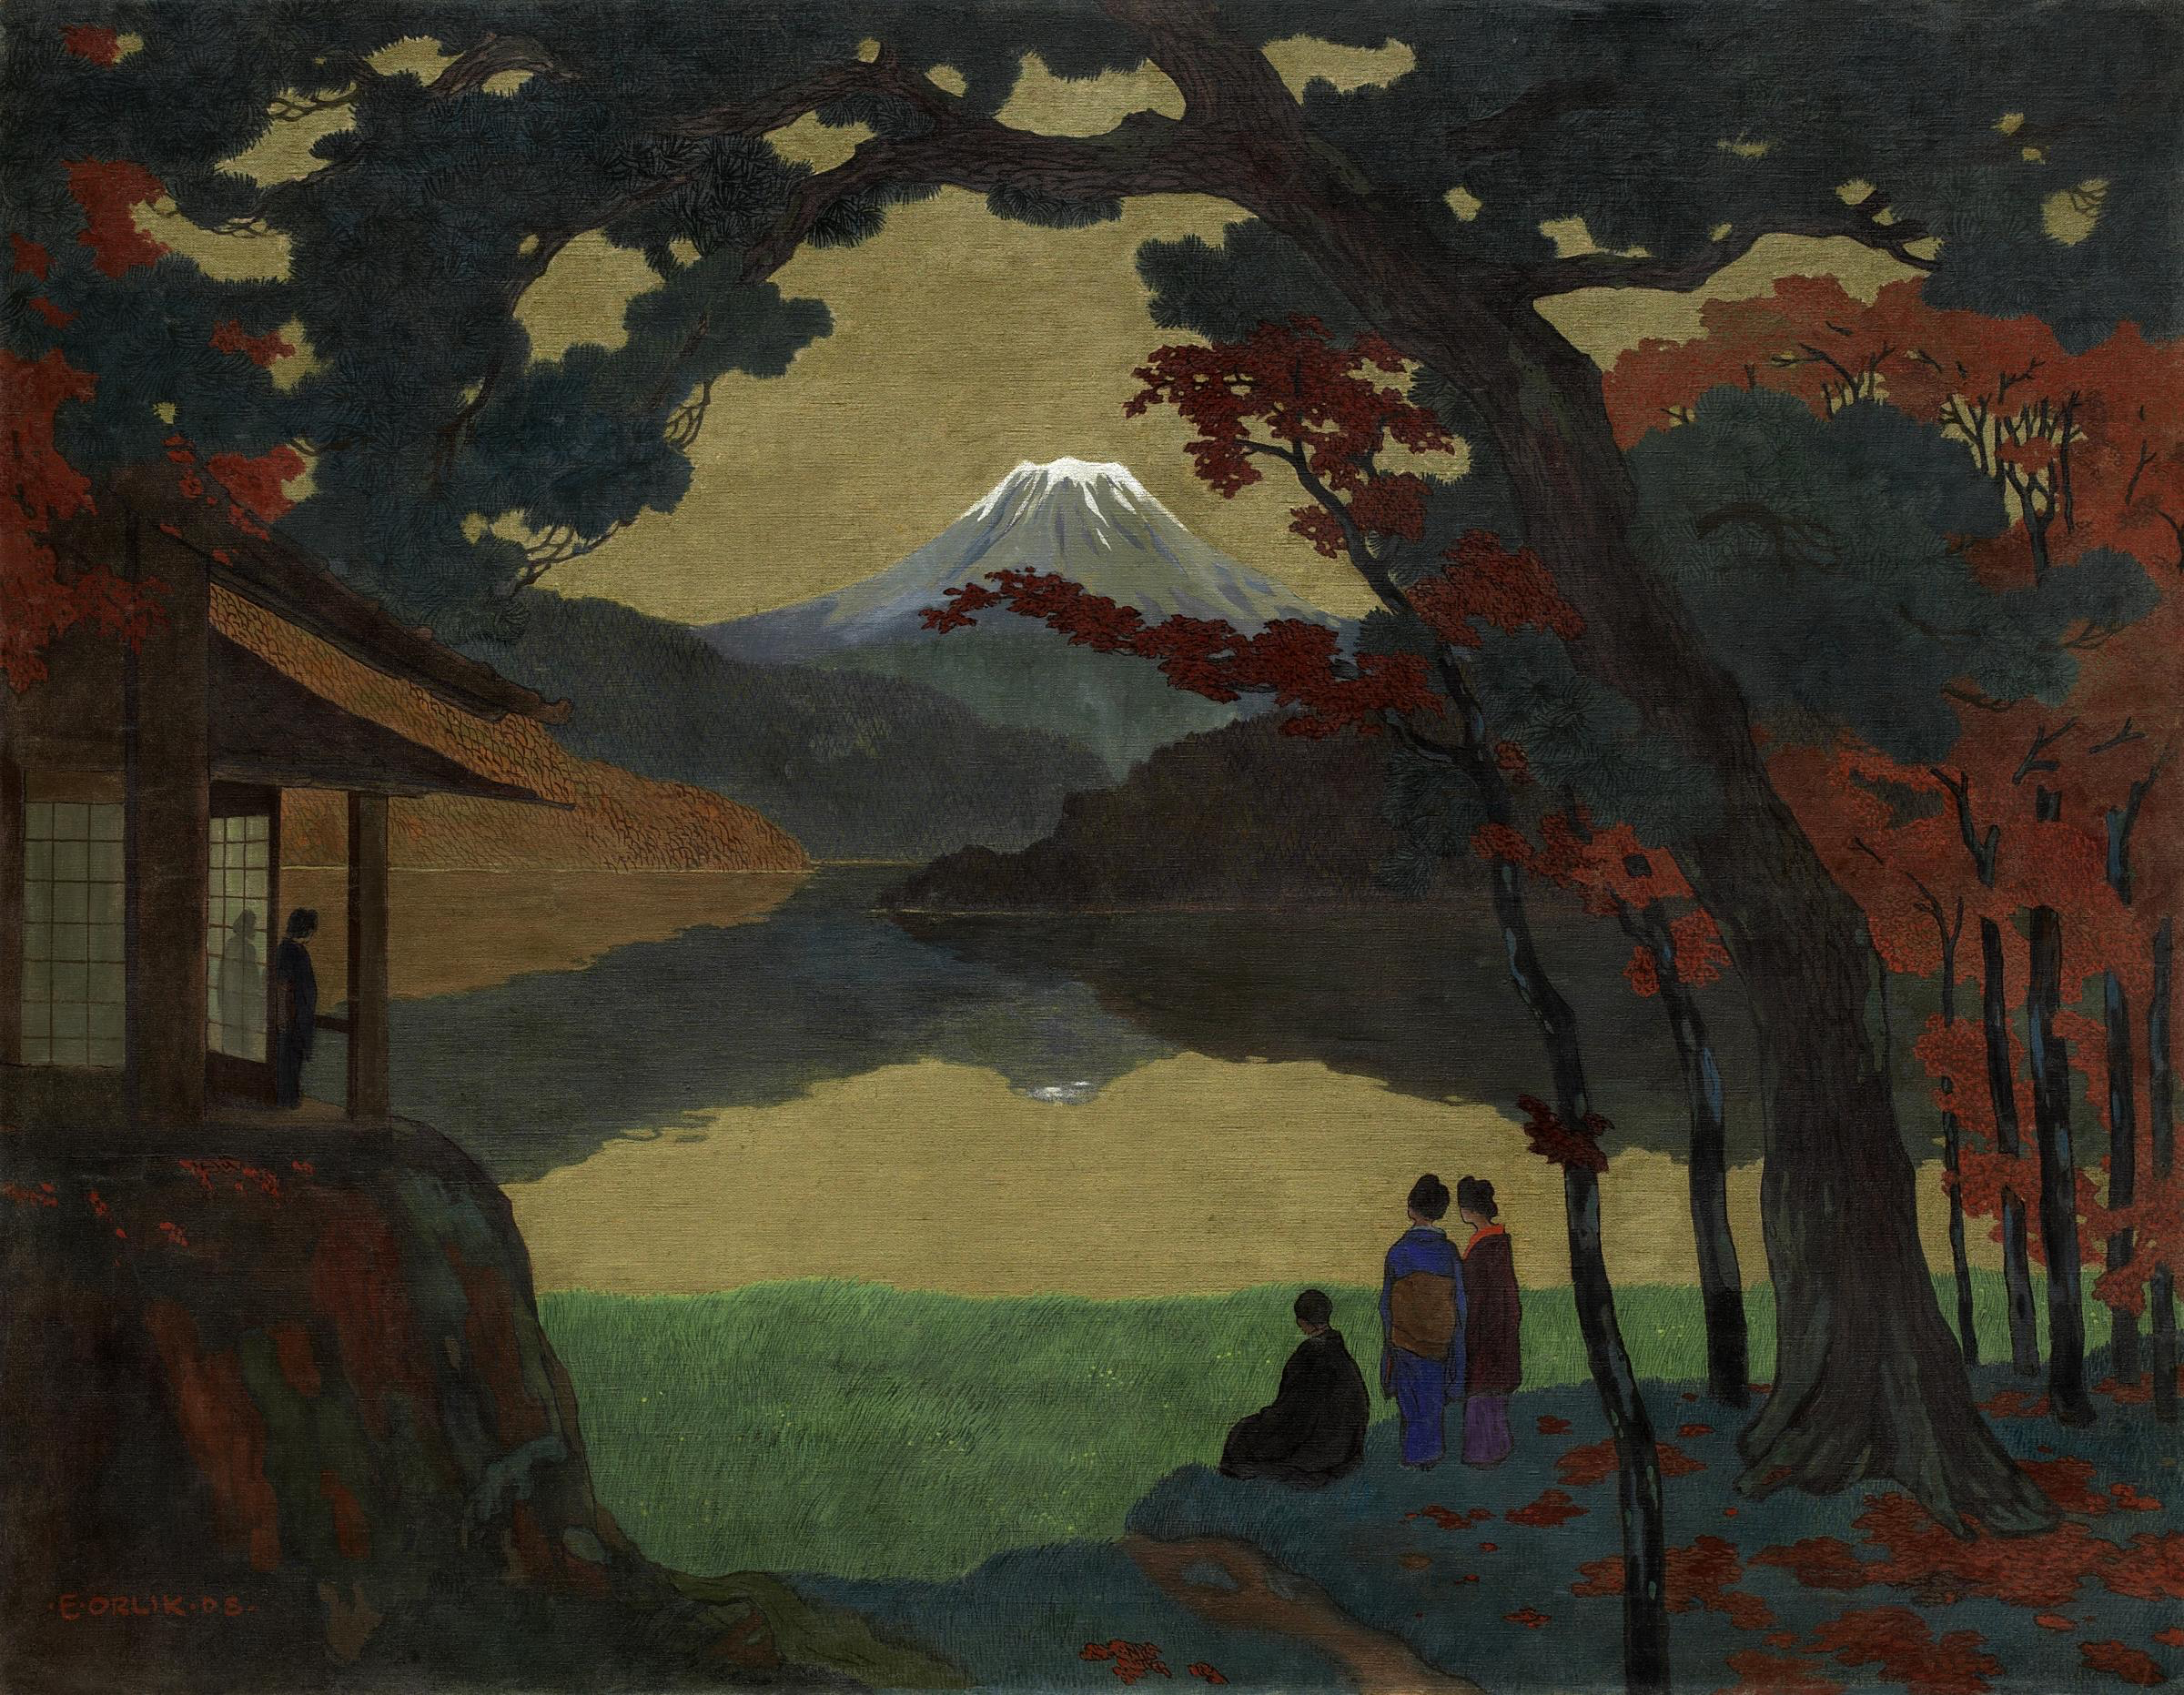 Пейзаж с горой Фудзи вдалеке by Emil Orlik - 1908 - 120.5 x 154.5 см 